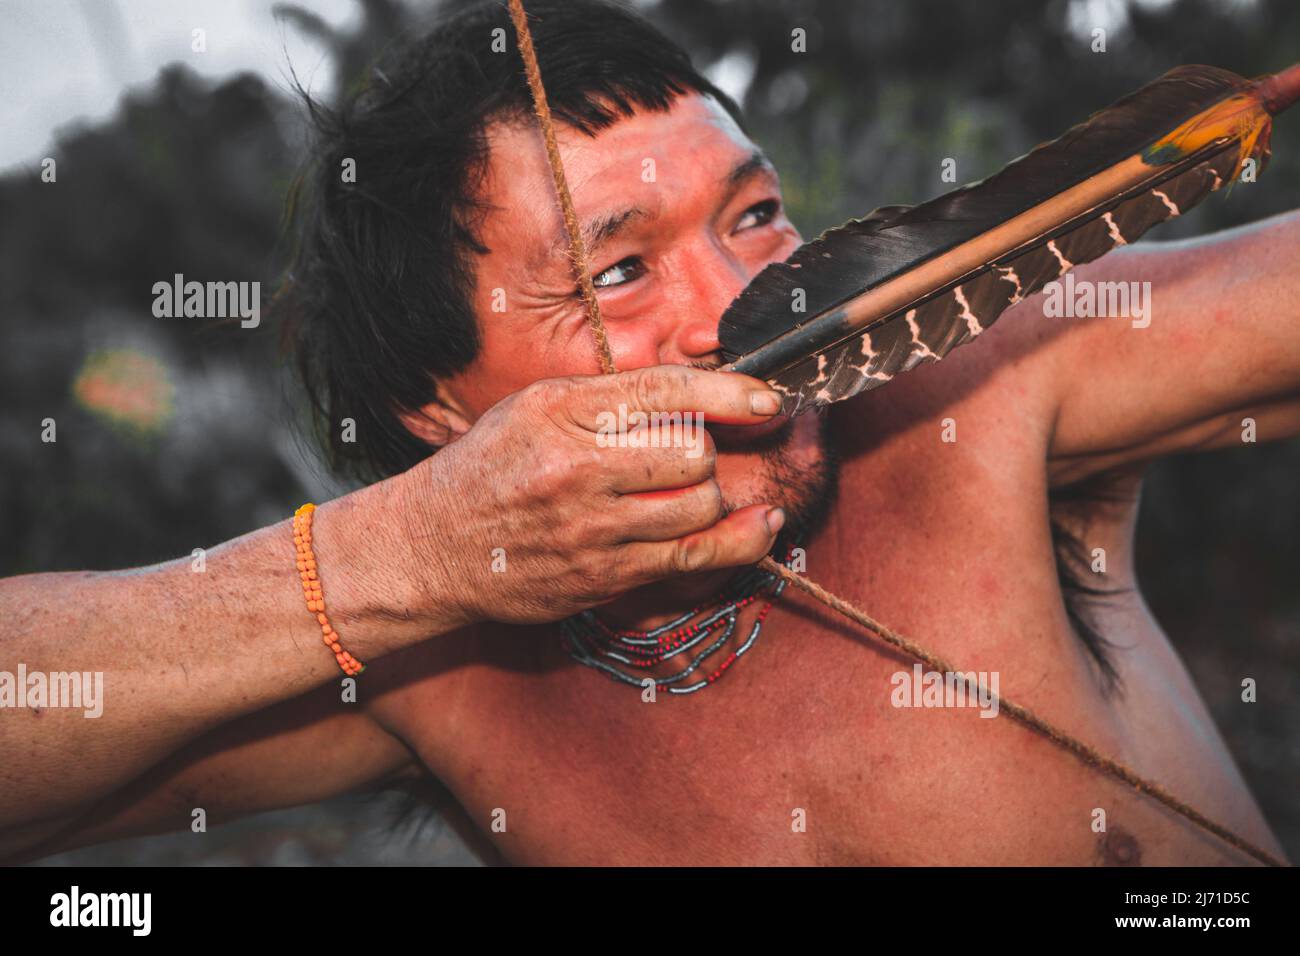 Homme indien d'une tribu amazonienne au Brésil, tiré avec un arc et une flèche. Baixo Amazonas, Pará, Amazone, Brésil. Banque D'Images